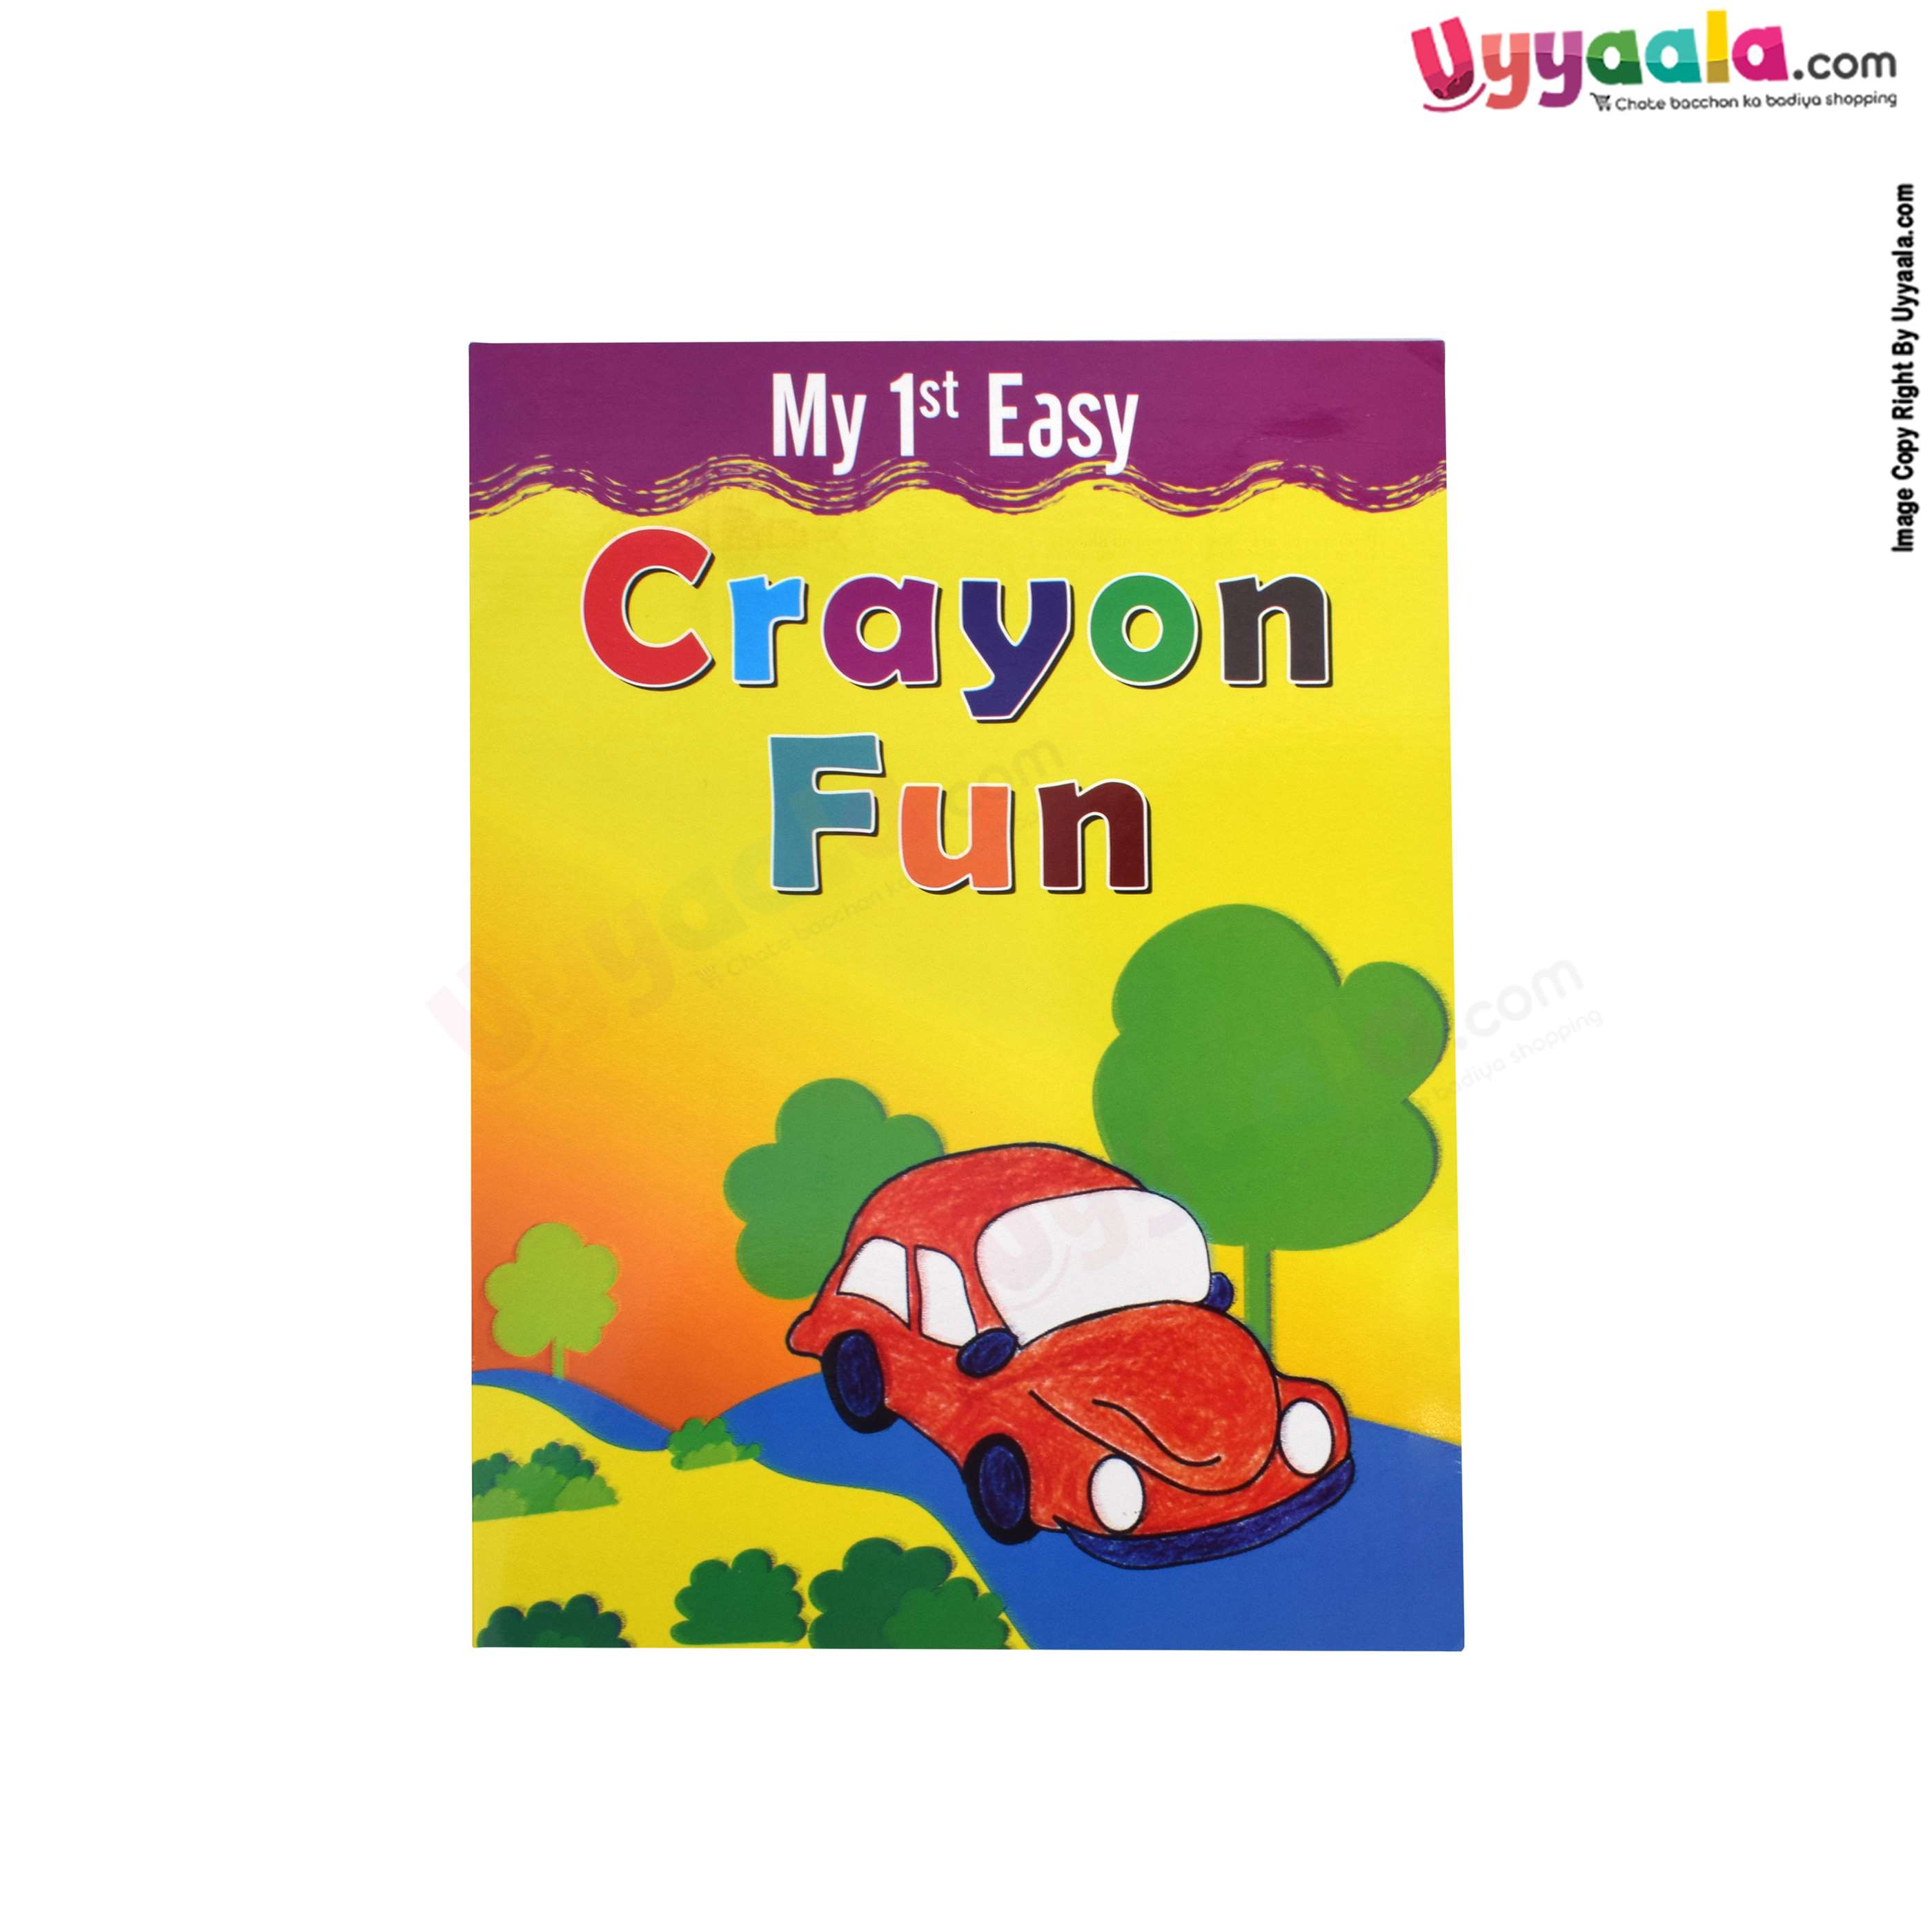 Fun books for kids